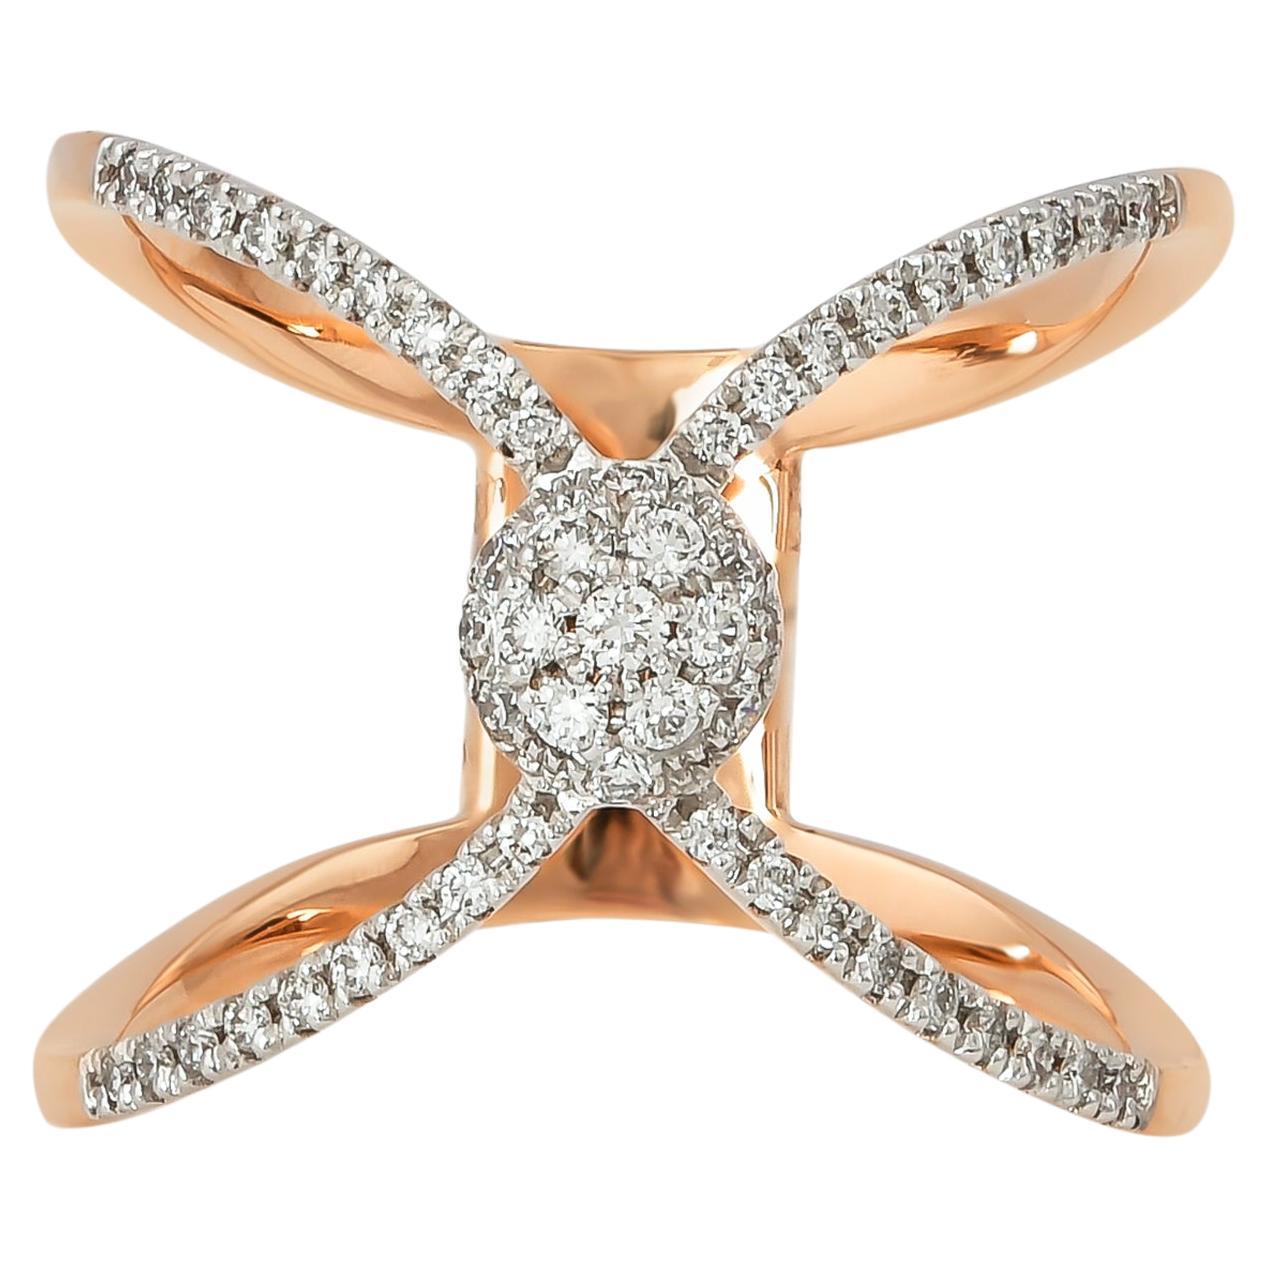 0.279 Carat Diamond Ring in 18 Karat Rose Gold For Sale